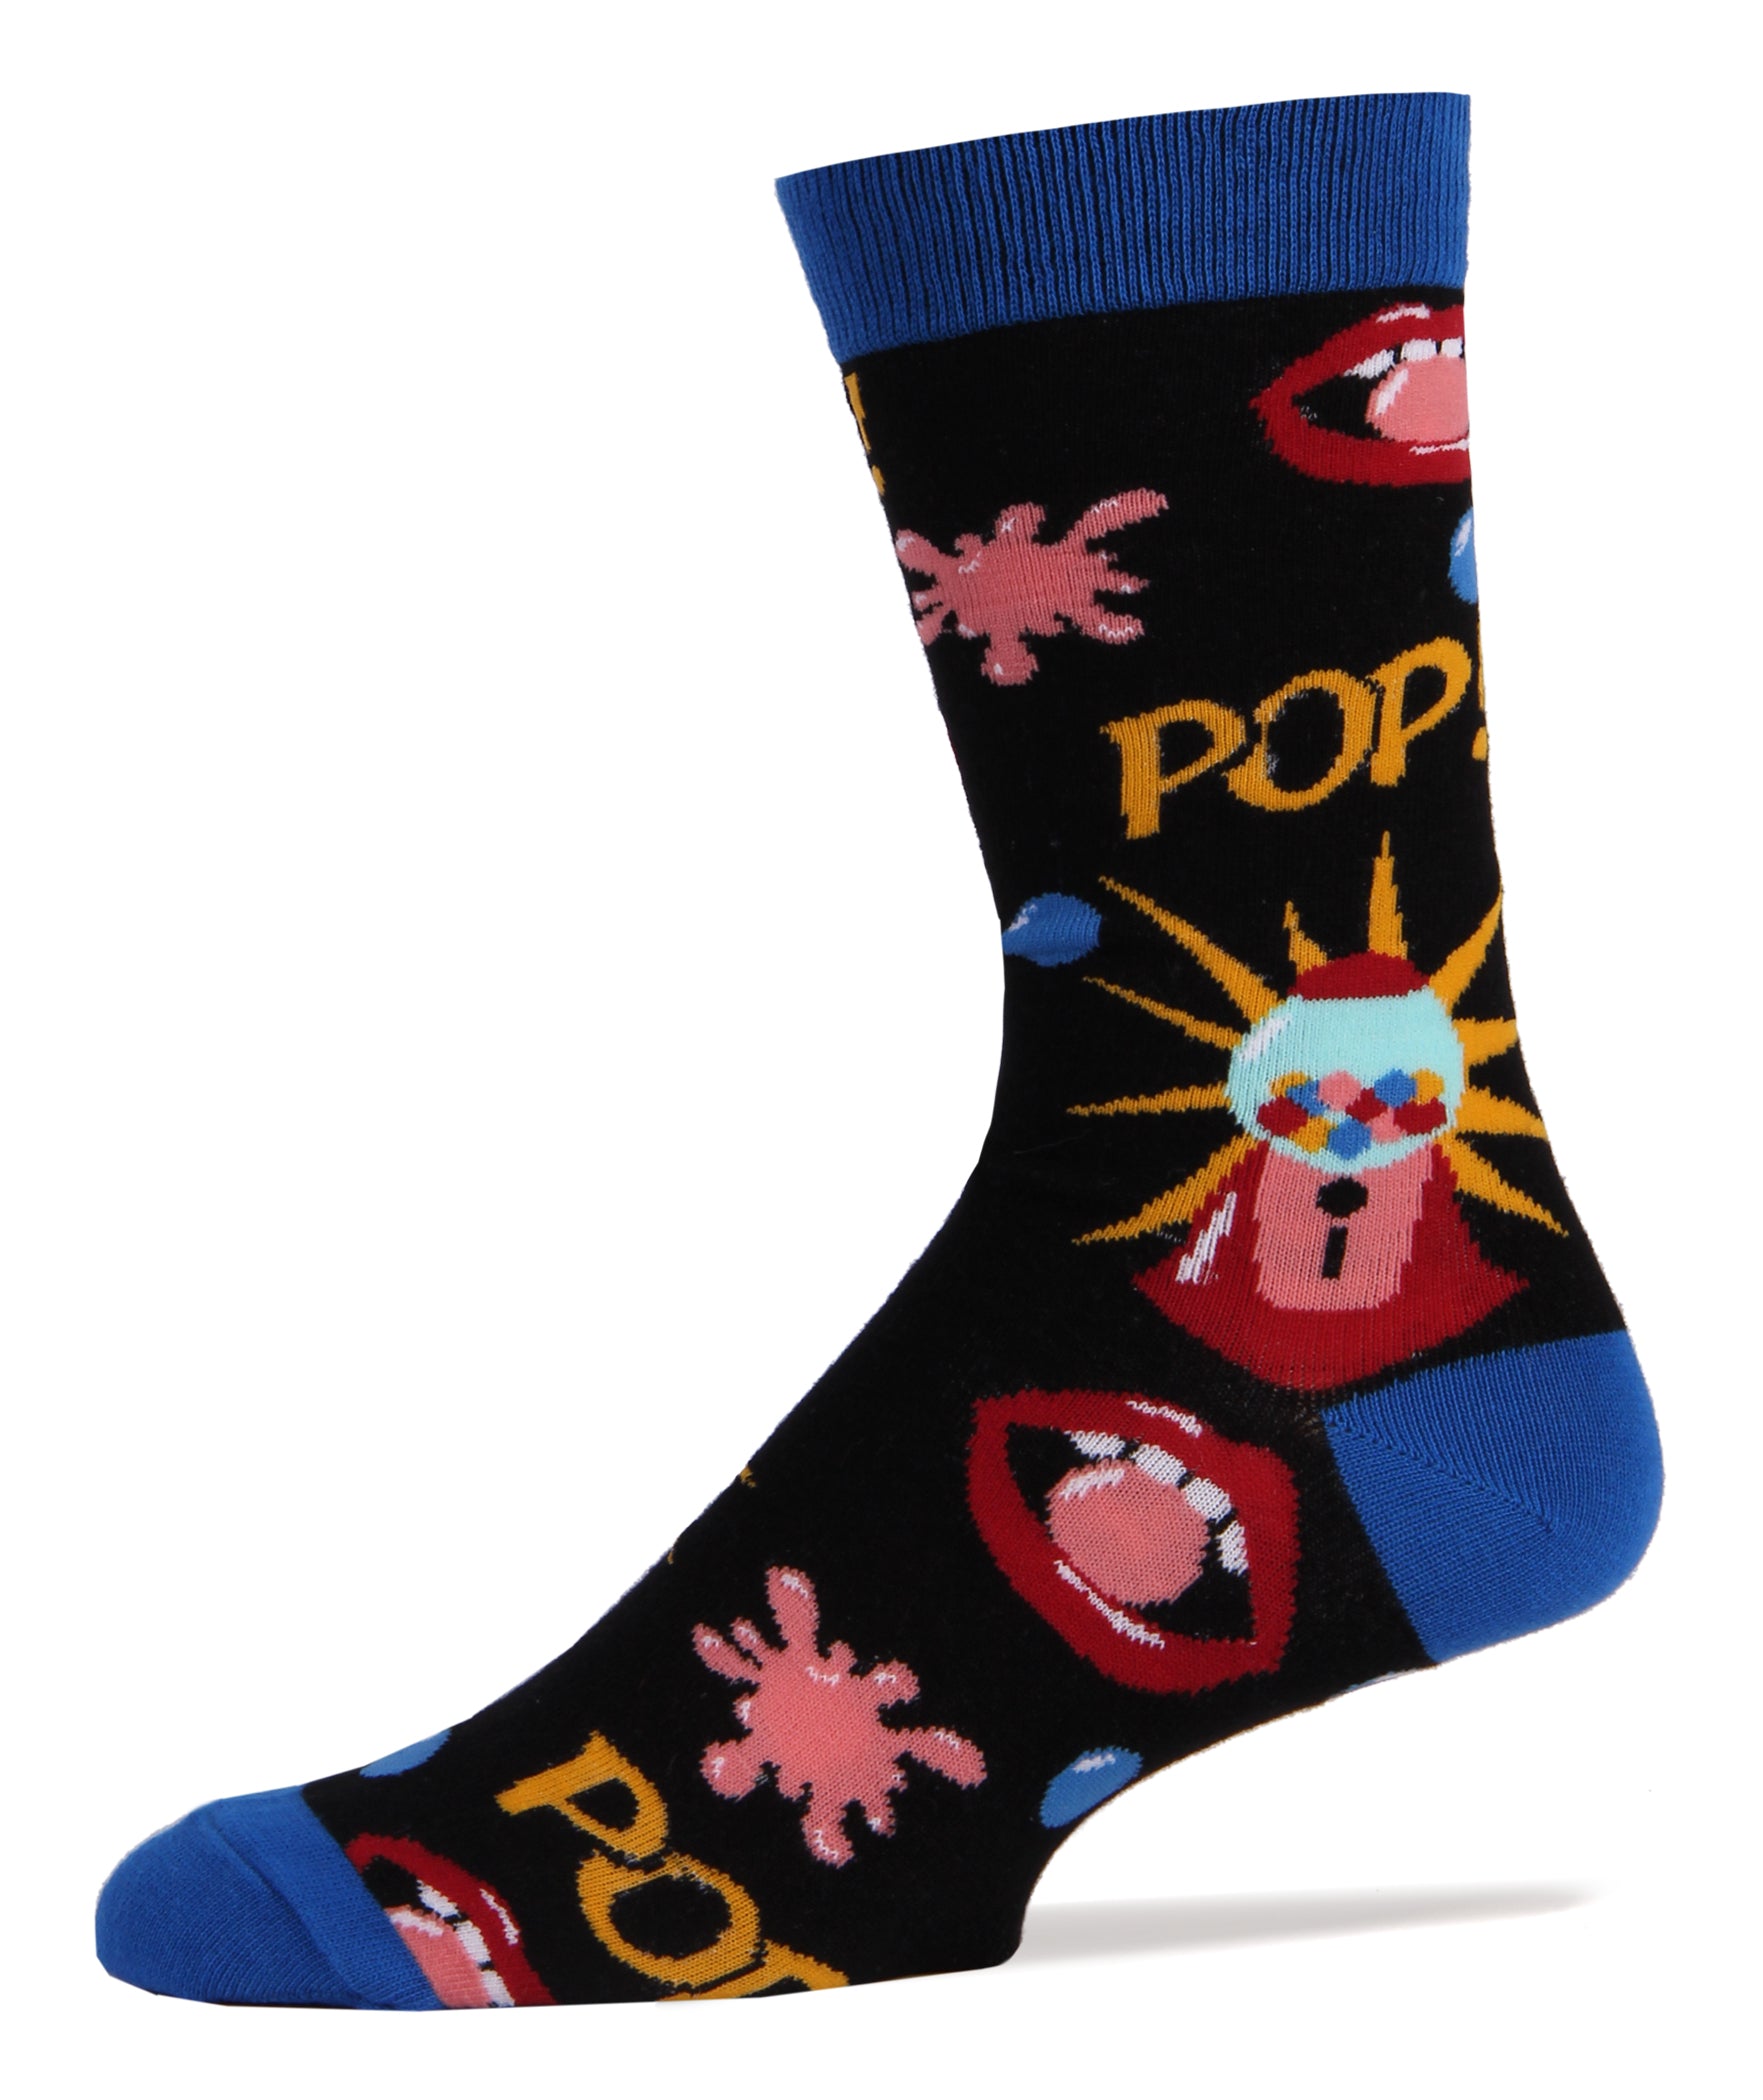 Gumball Socks | Novelty Crew Socks For Men